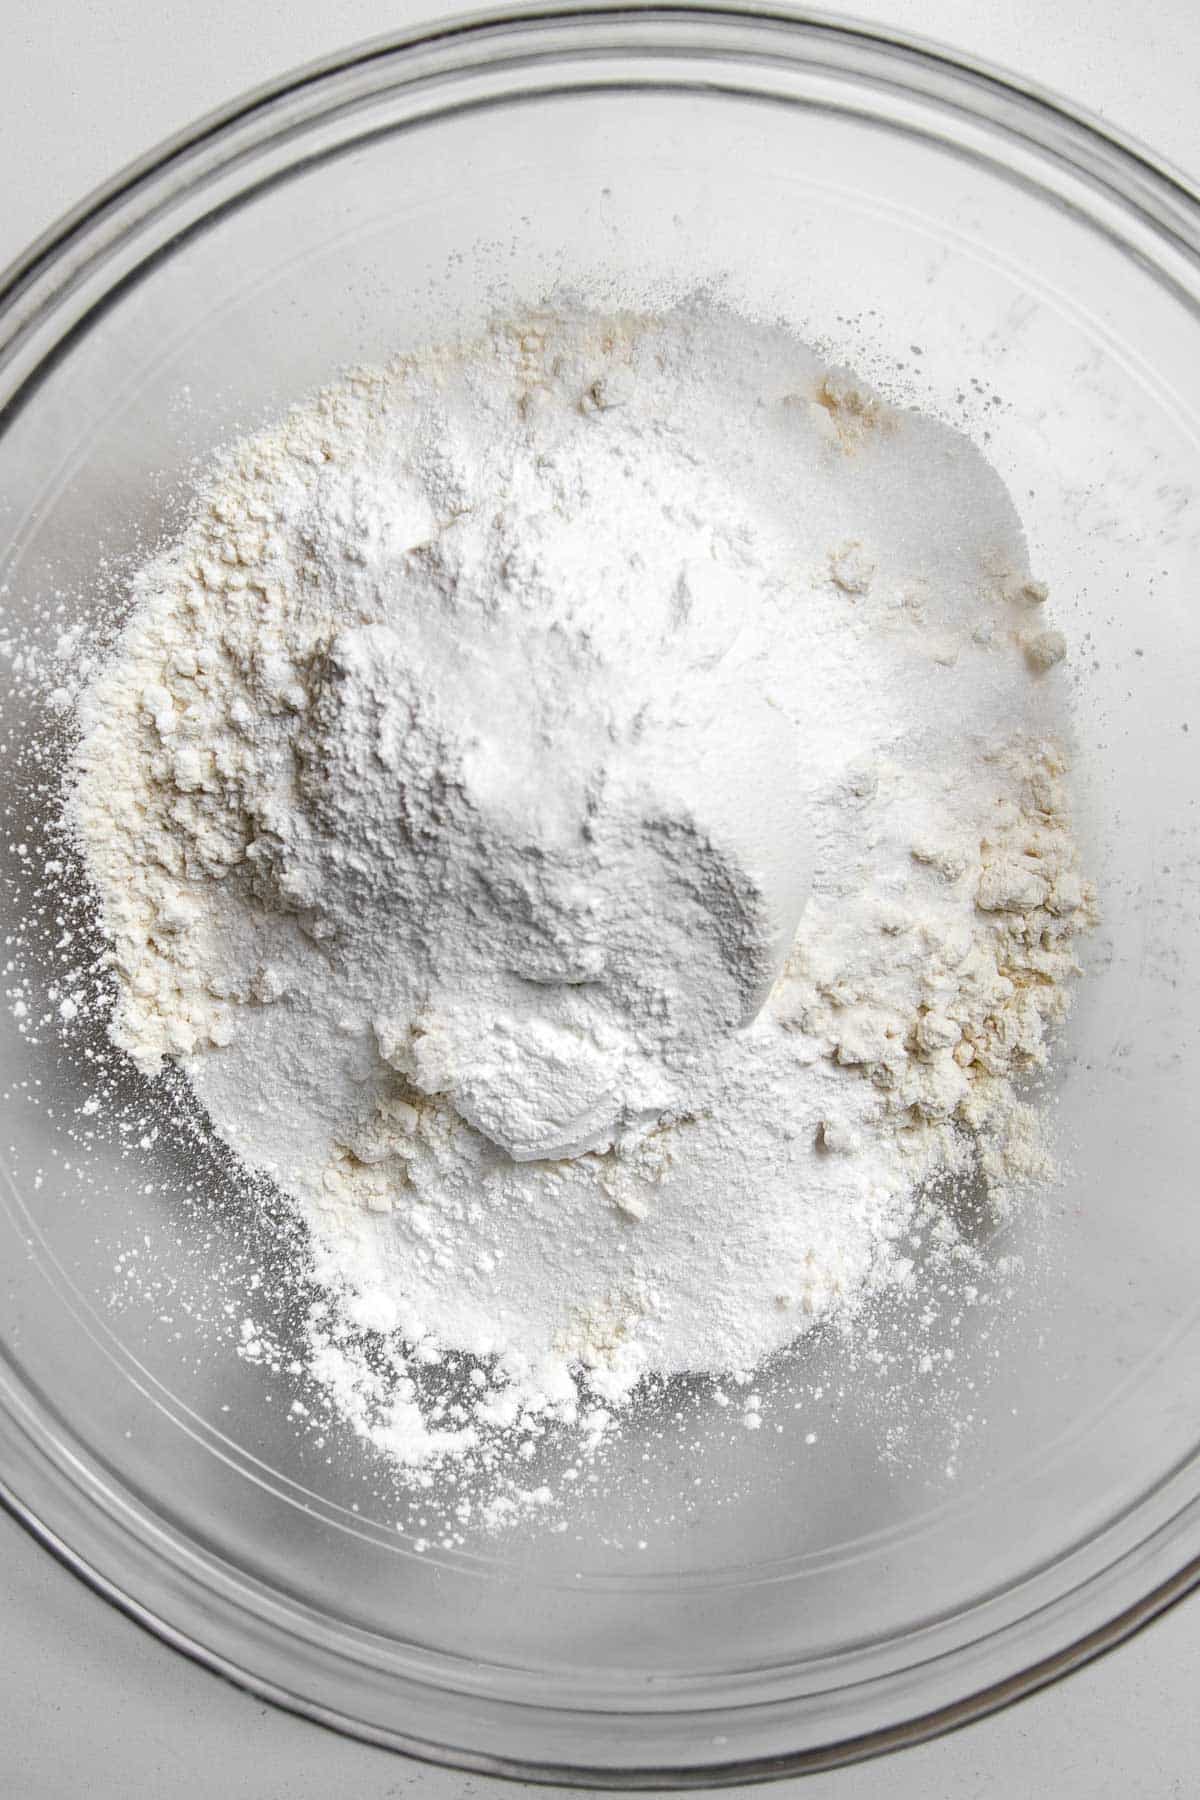 flour, baking powder, sugar and salt in a bowl.